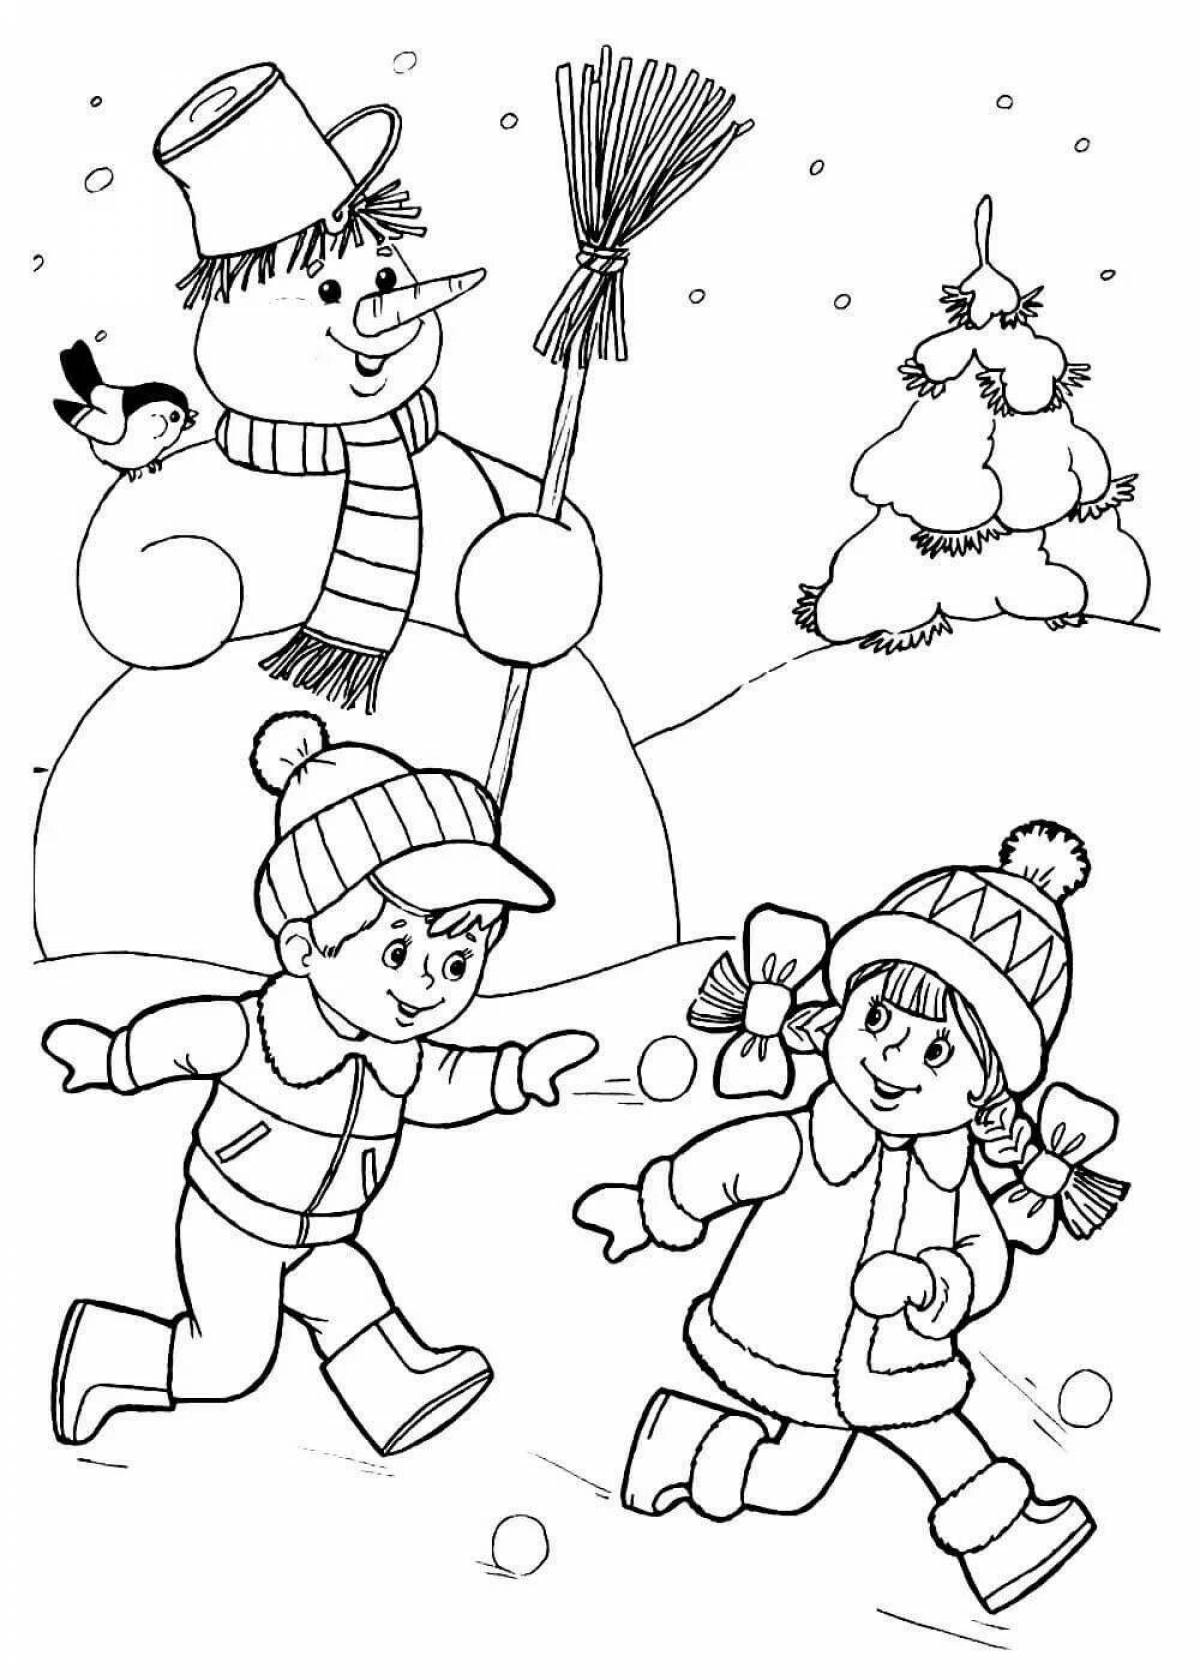 Great winter fun coloring book